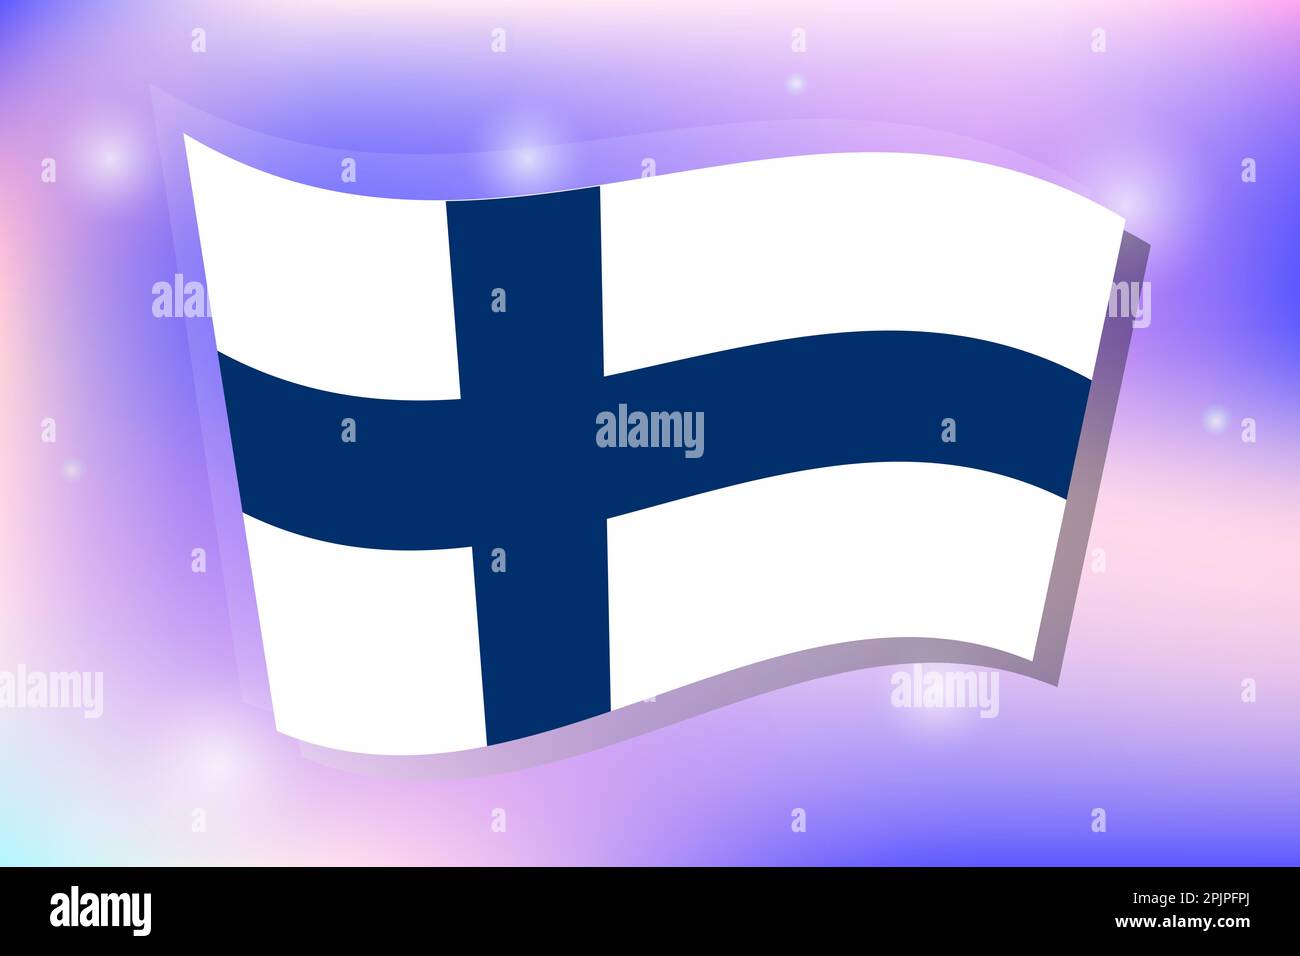 Bandiera nazionale della Finlandia su sfondo blu e viola. Immagine vettoriale. Illustrazione Vettoriale